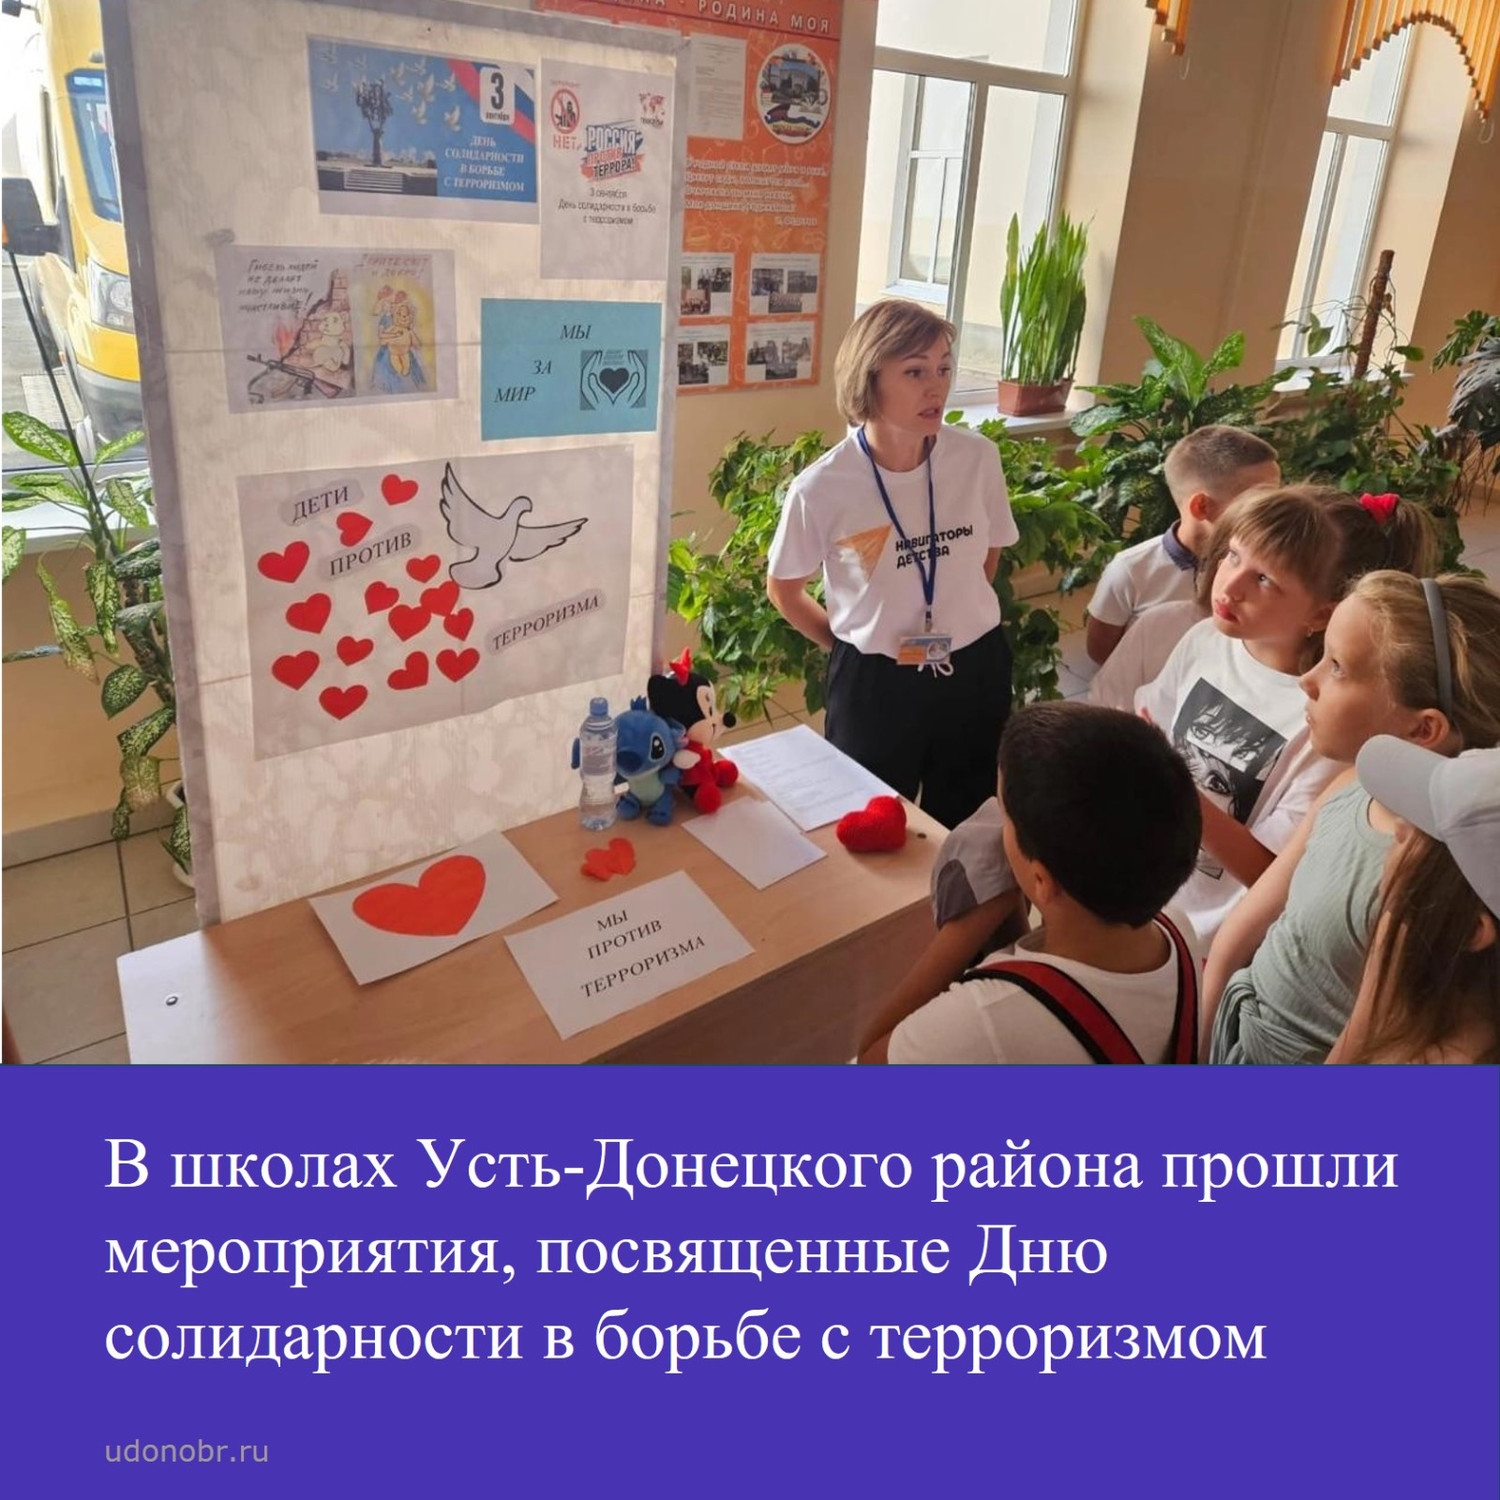 В школах Усть-Донецкого района прошли мероприятия, посвященные Дню солидарности в борьбе с терроризмом